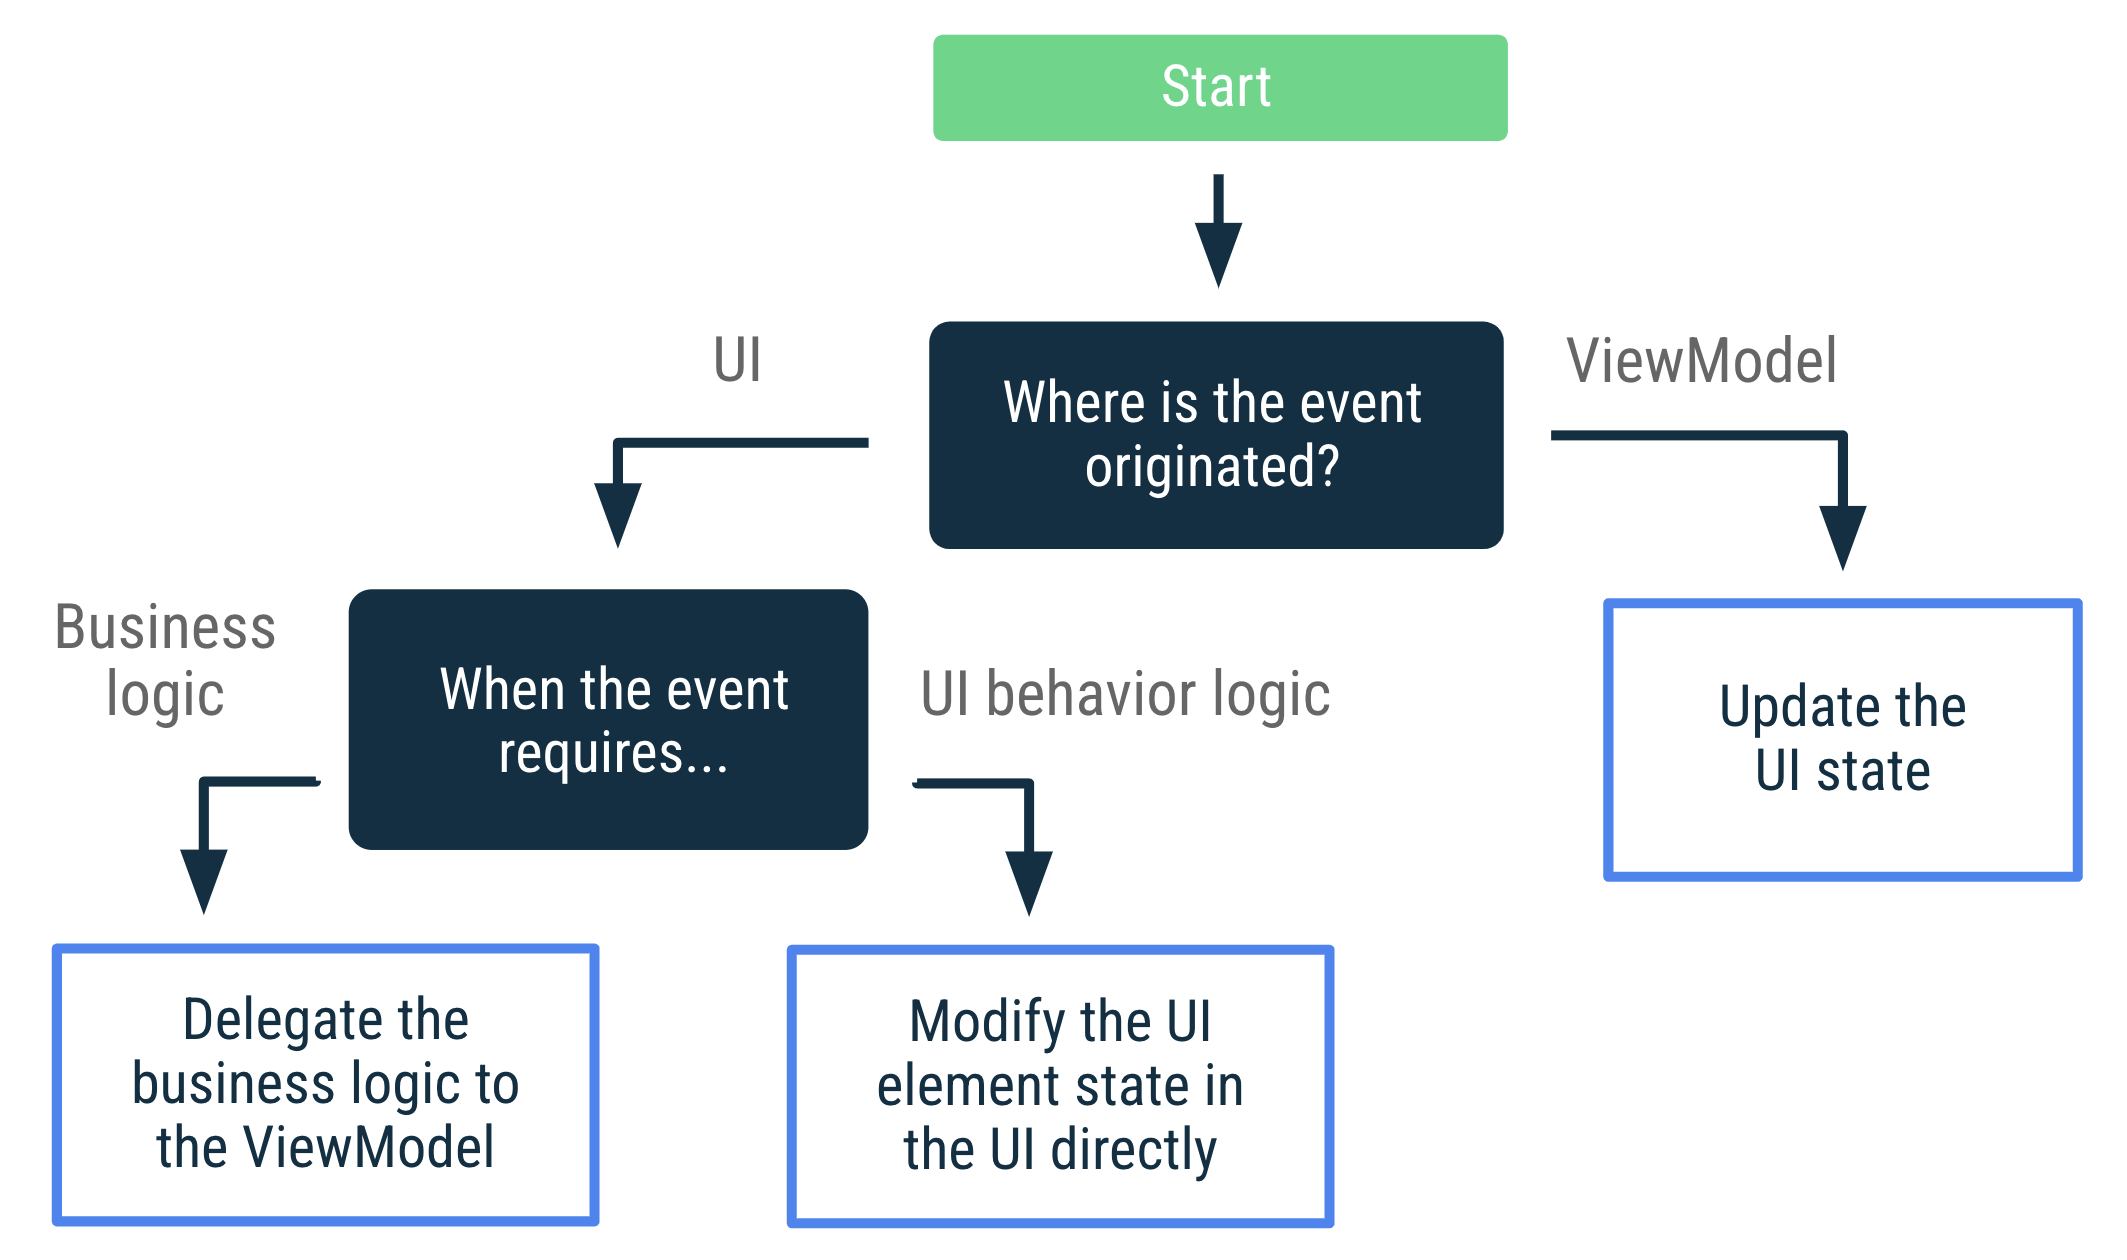 如果事件源自於 ViewModel，請更新 UI 狀態。如果事件源自 UI 且需要商業邏輯，請將商業邏輯委派給 ViewModel。如果事件源自 UI 且需要 UI 行為邏輯，請直接在 UI 修改 UI 元素狀態。